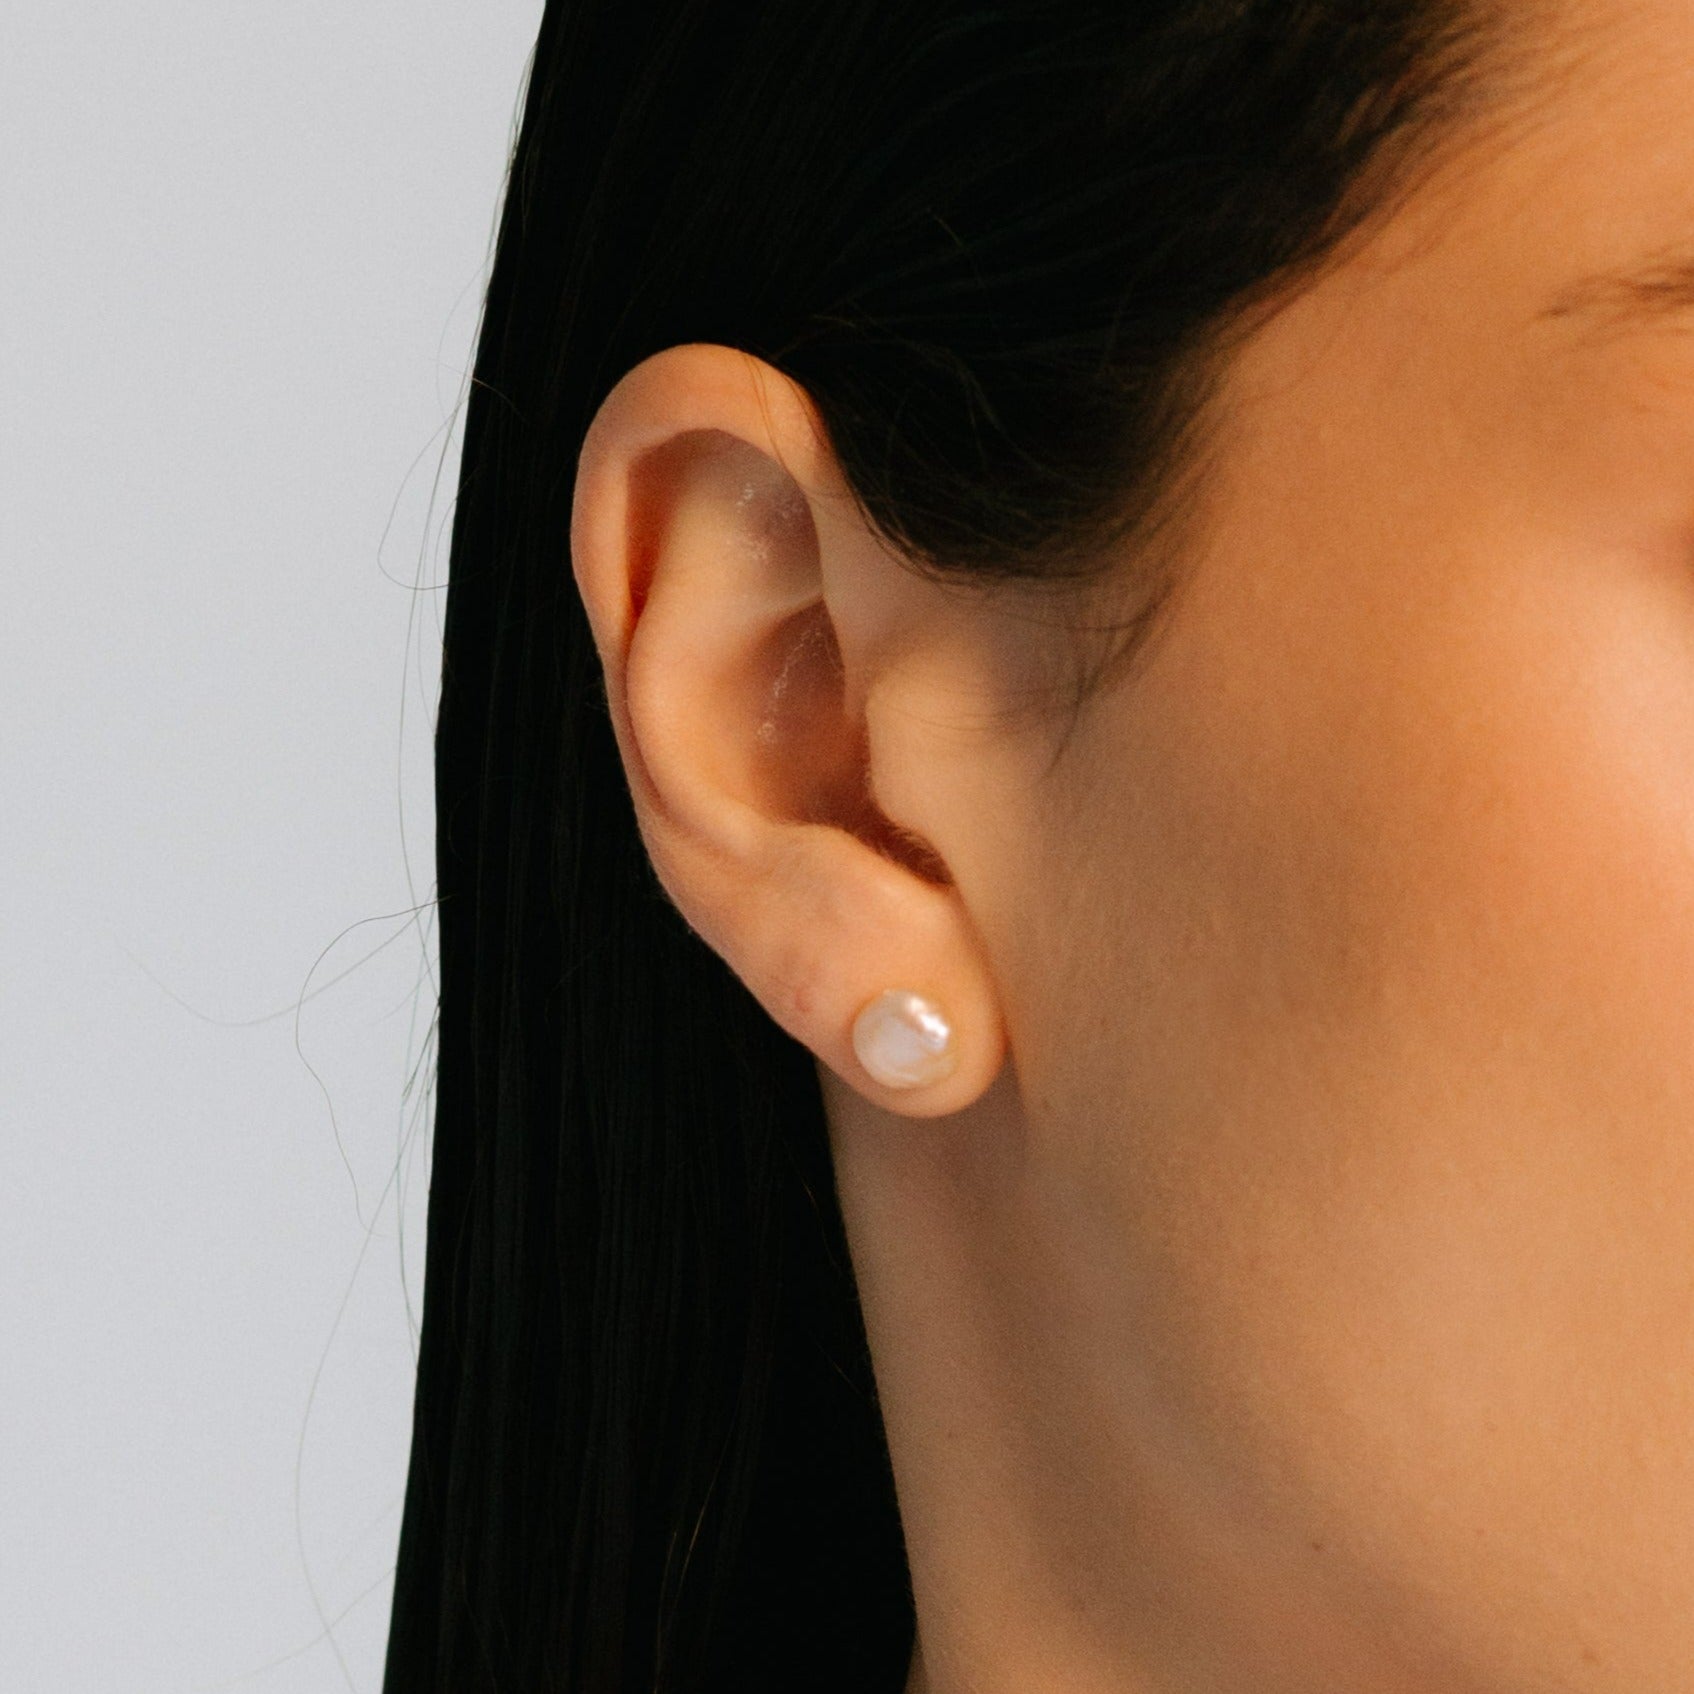 Barroca Earrings #1 (10mm) - Salmon Pearl